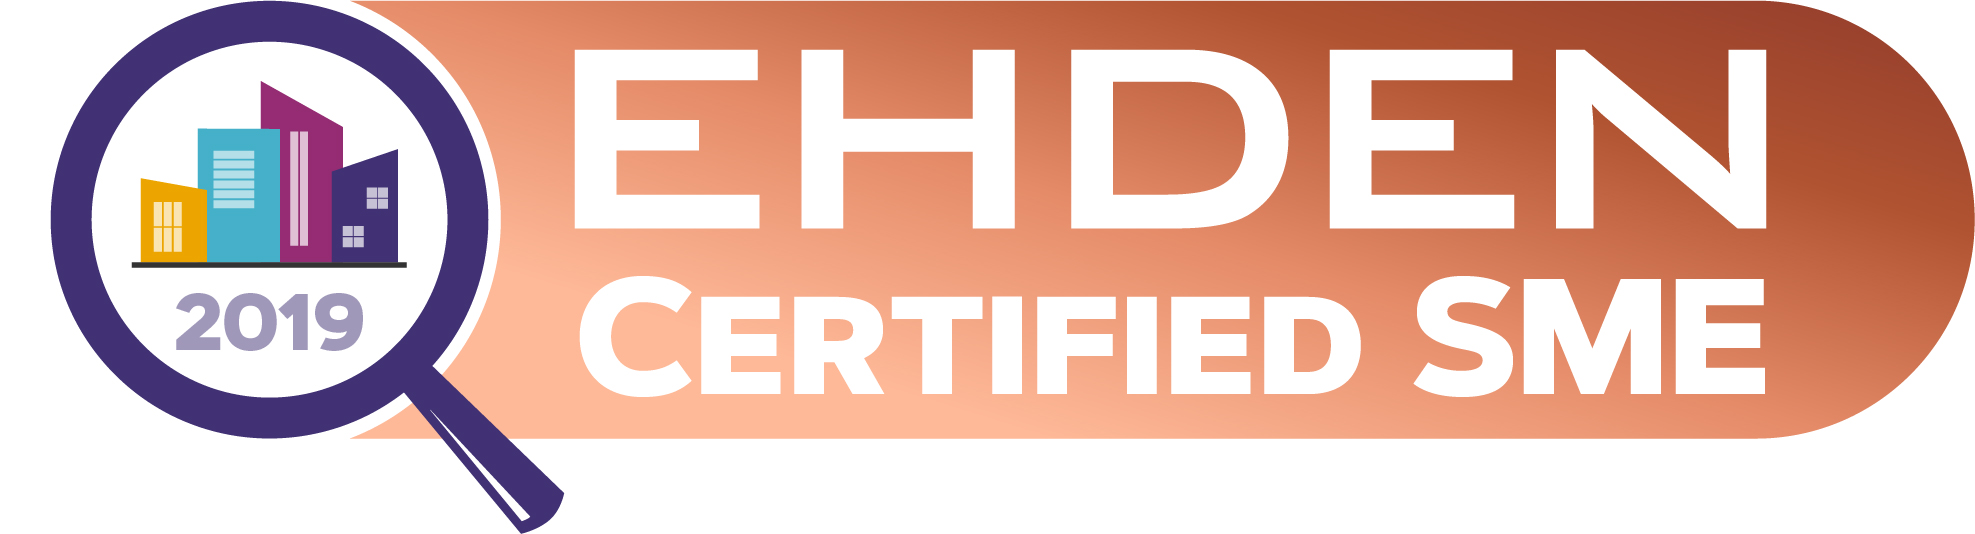 EHDEN Certification